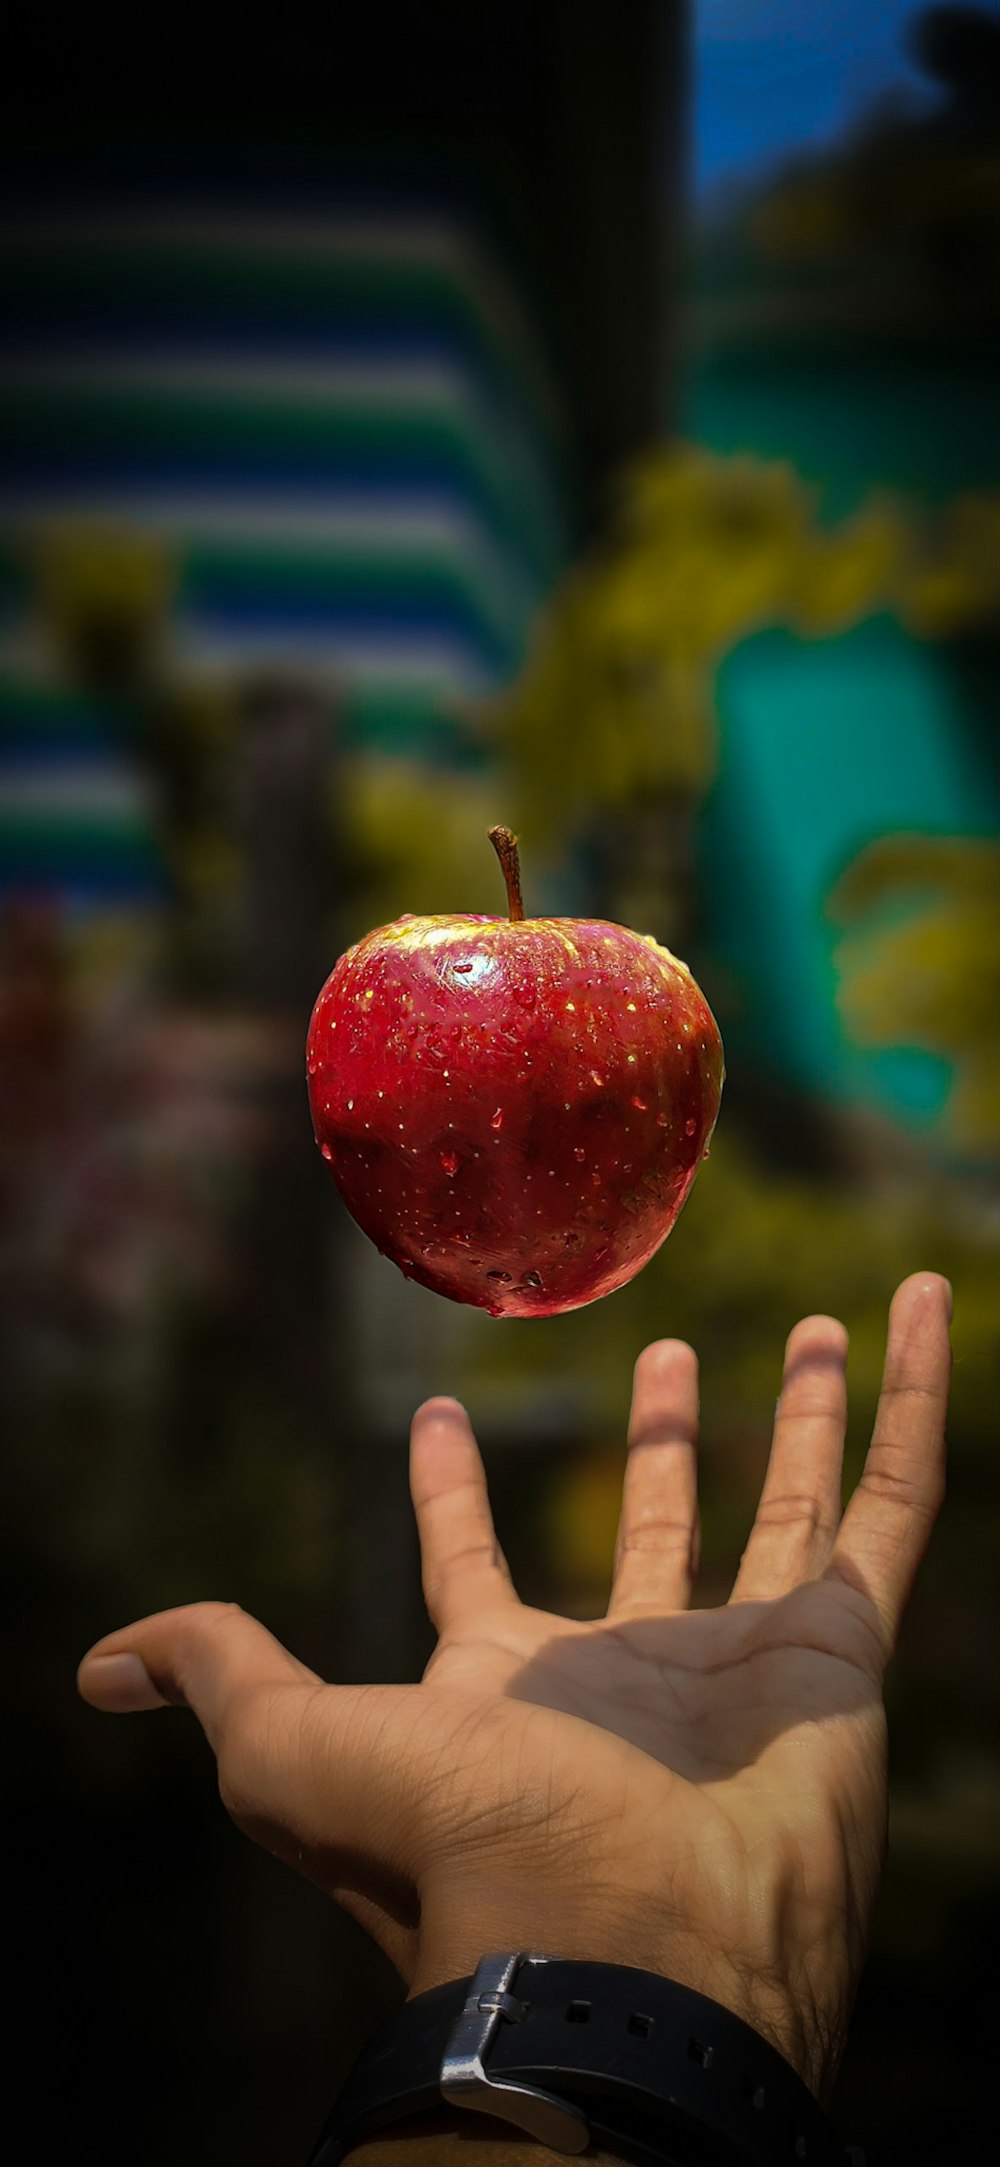 maçã vermelha perto da mão da pessoa